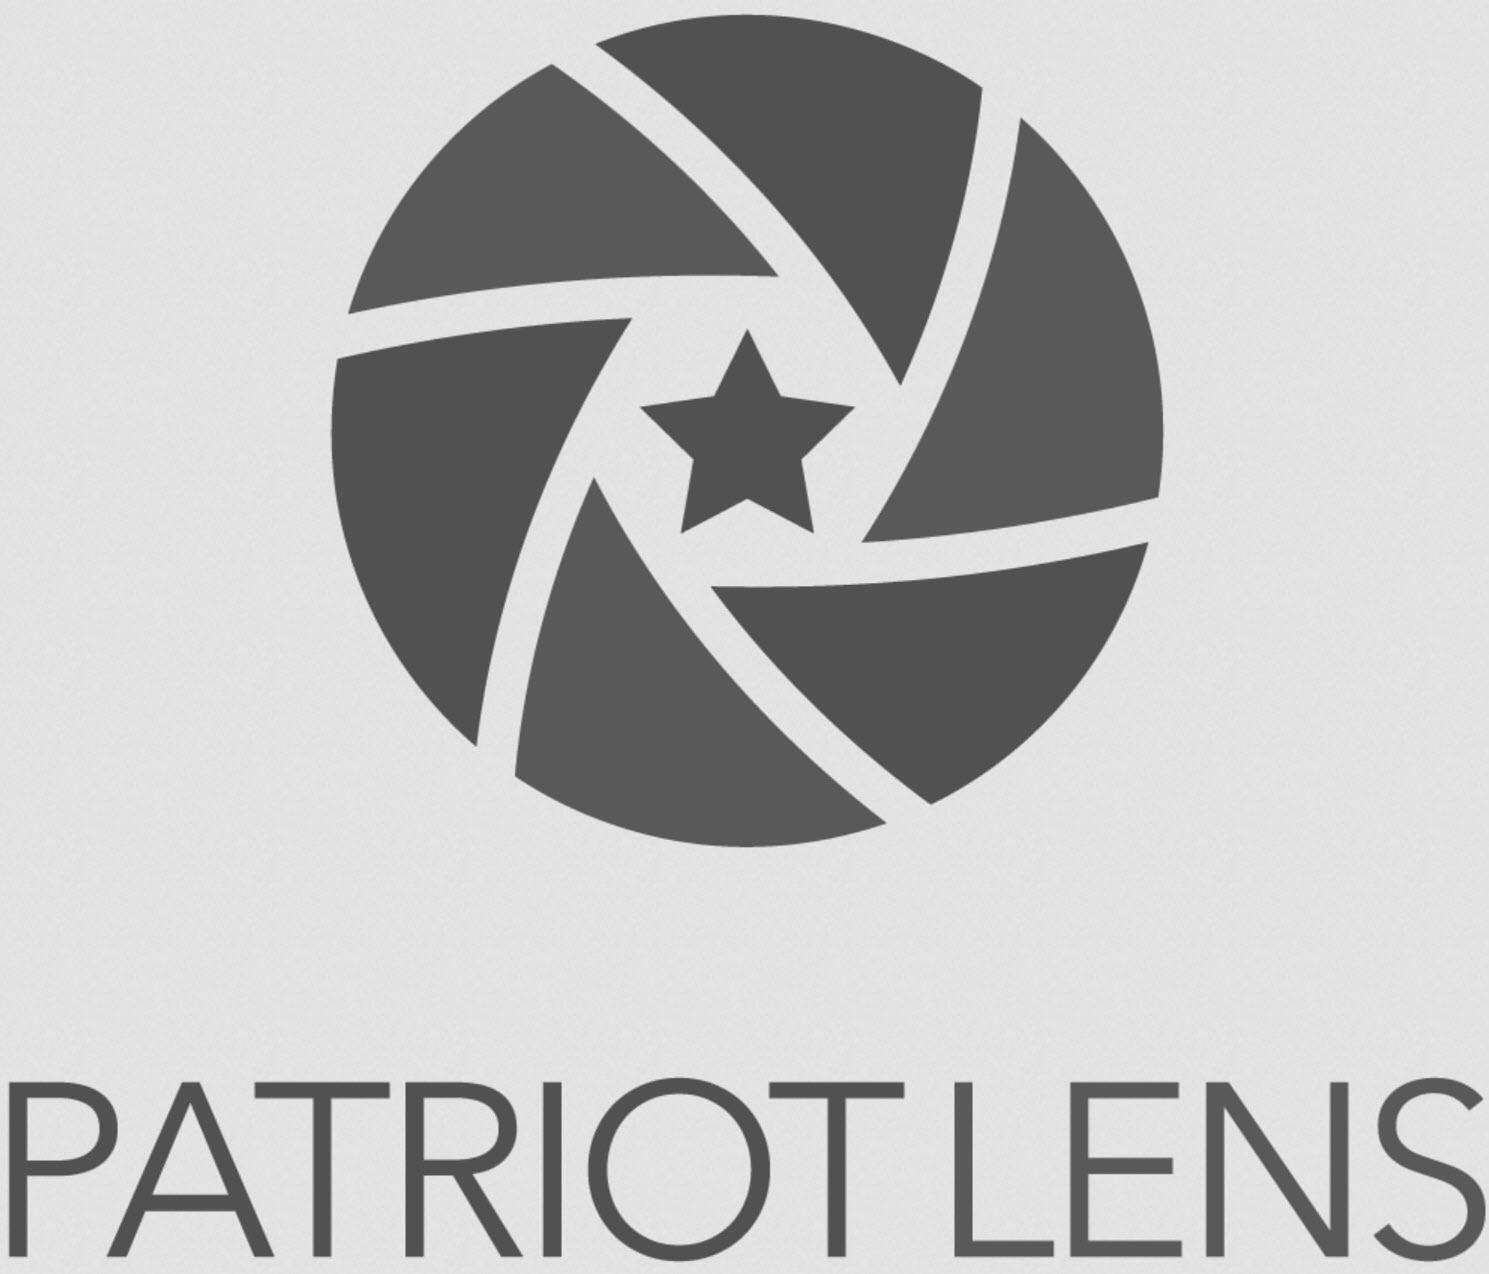 Trademark Logo PATRIOT LENS